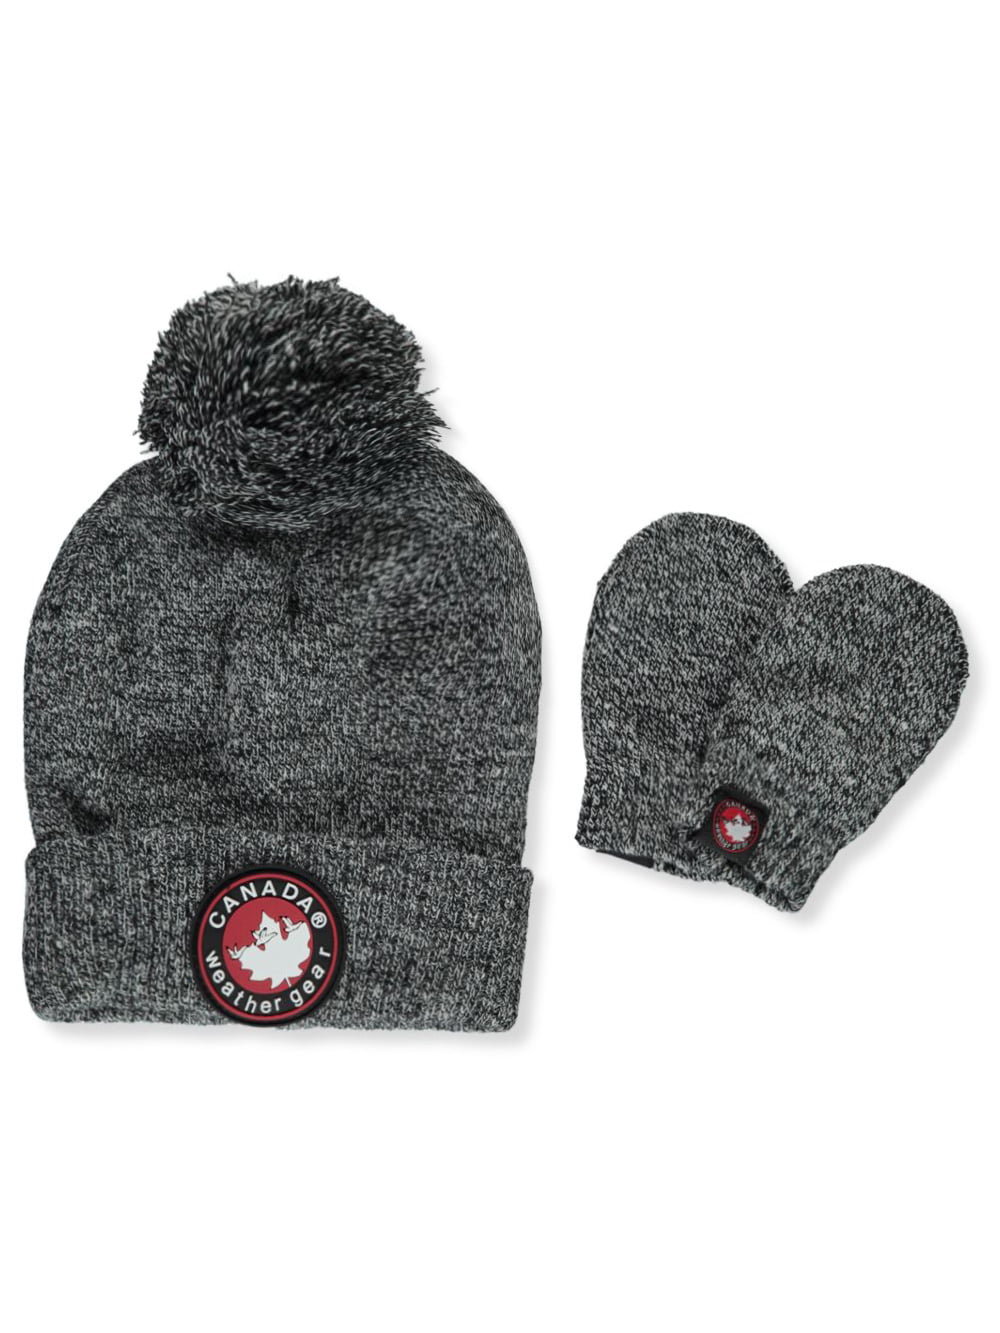 New Unisex Kids' Winter Beanie Hat & Gloves Set by Canada Weather Gear Brand ski 